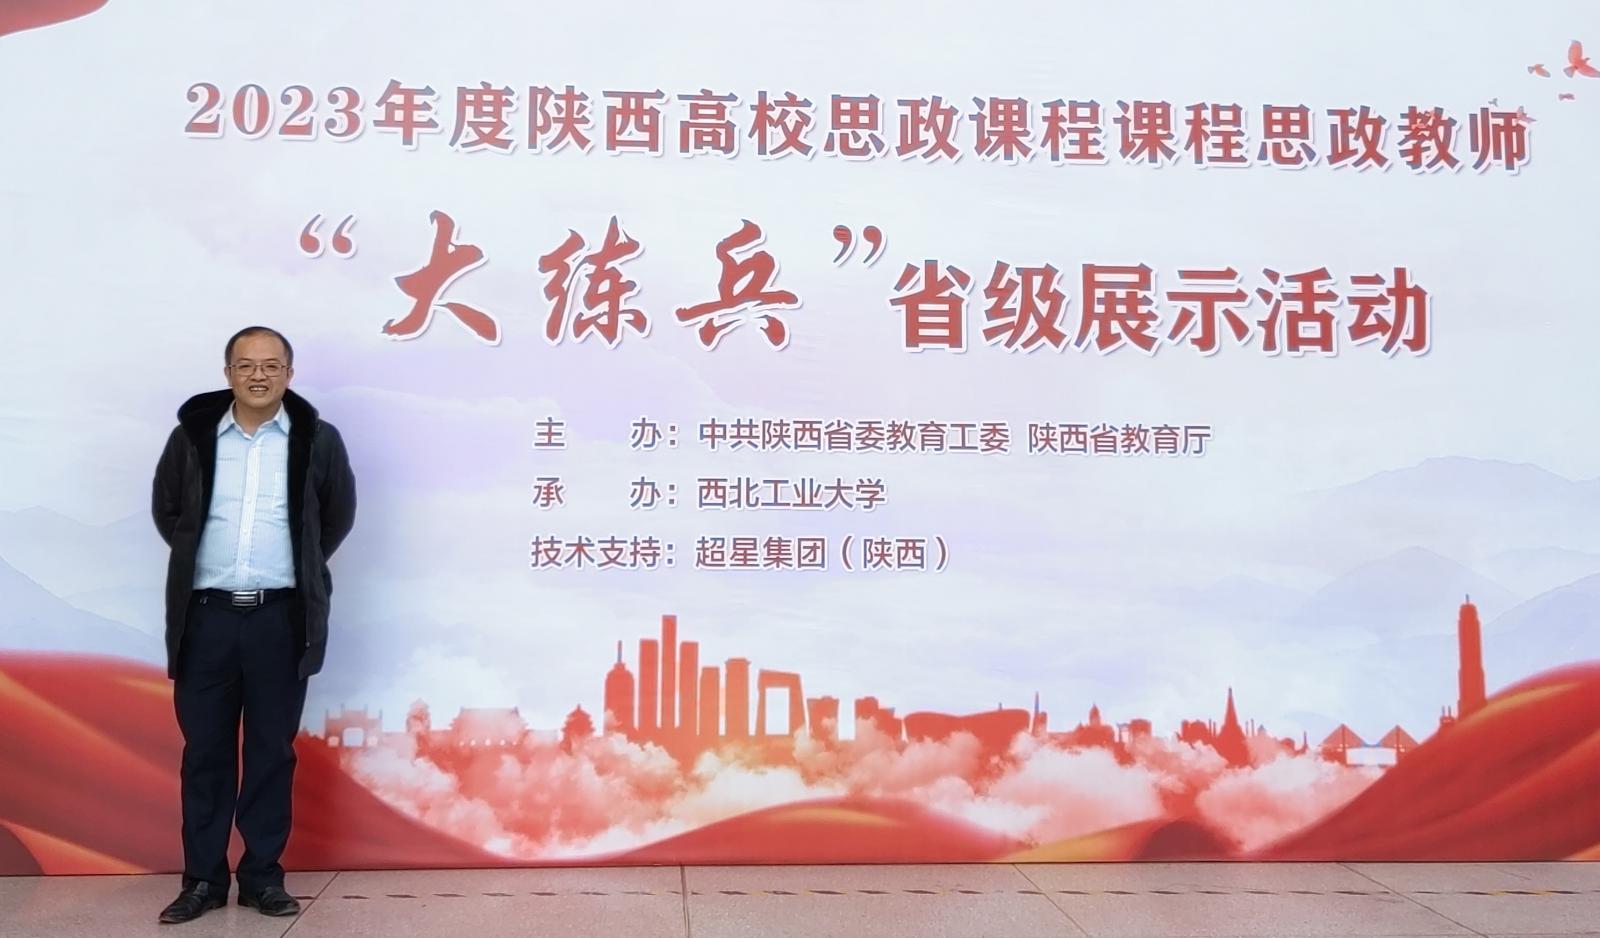 全校唯一 | 电院邓军教授获2023年度陕西省课程思政“教学标兵”称号